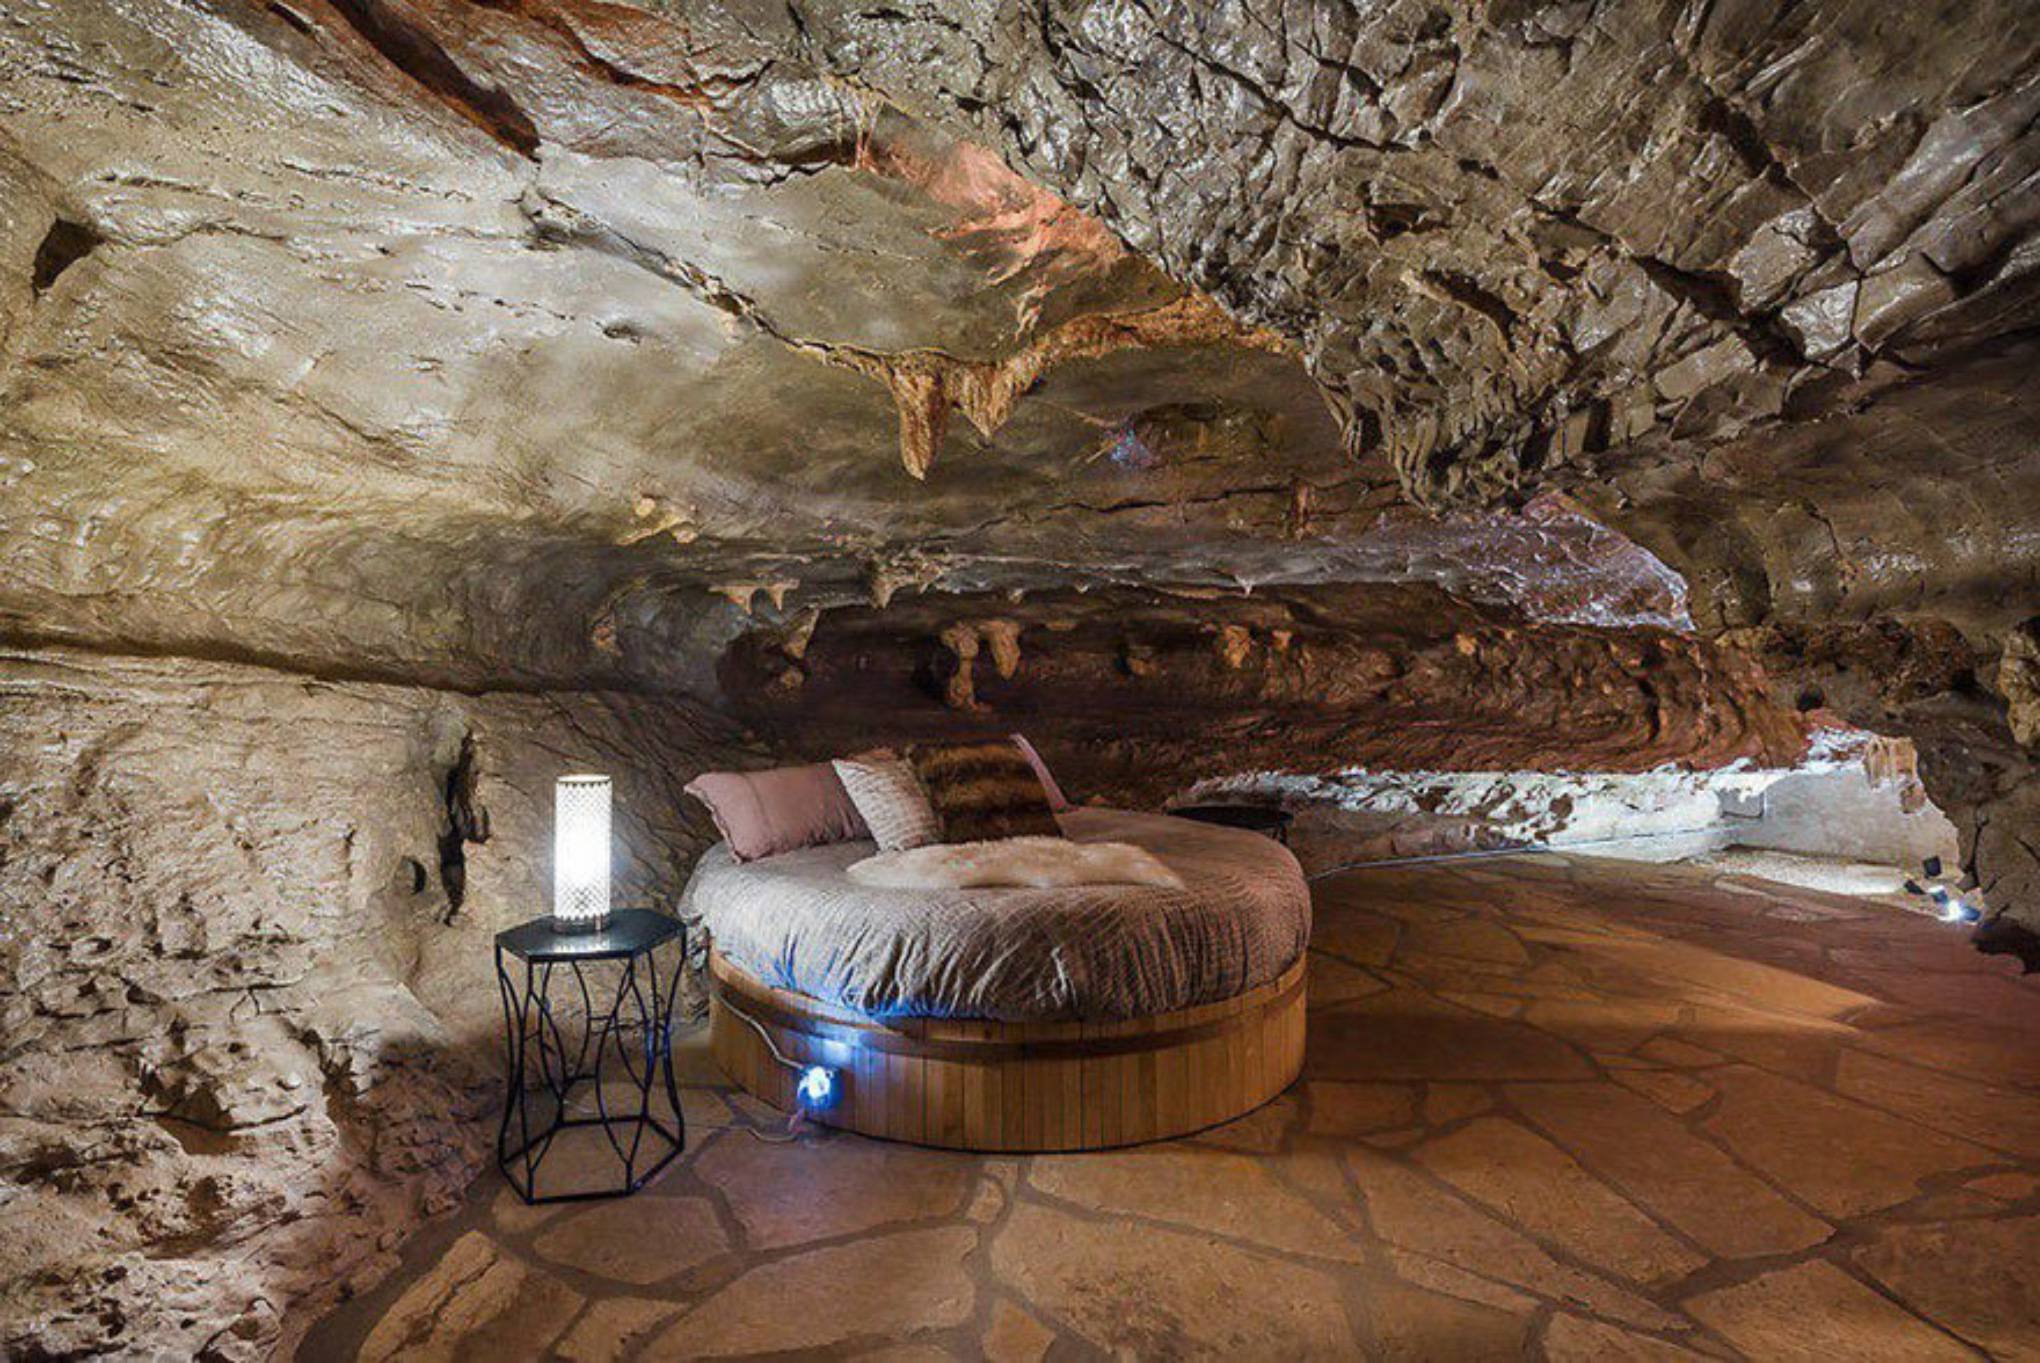 Cave home. Гостиница Beckham Creek Cave Lodge. Beckham Creek Cave Lodge, США, Арканзас. Отели в пещерах Аризона. Необычные отели.